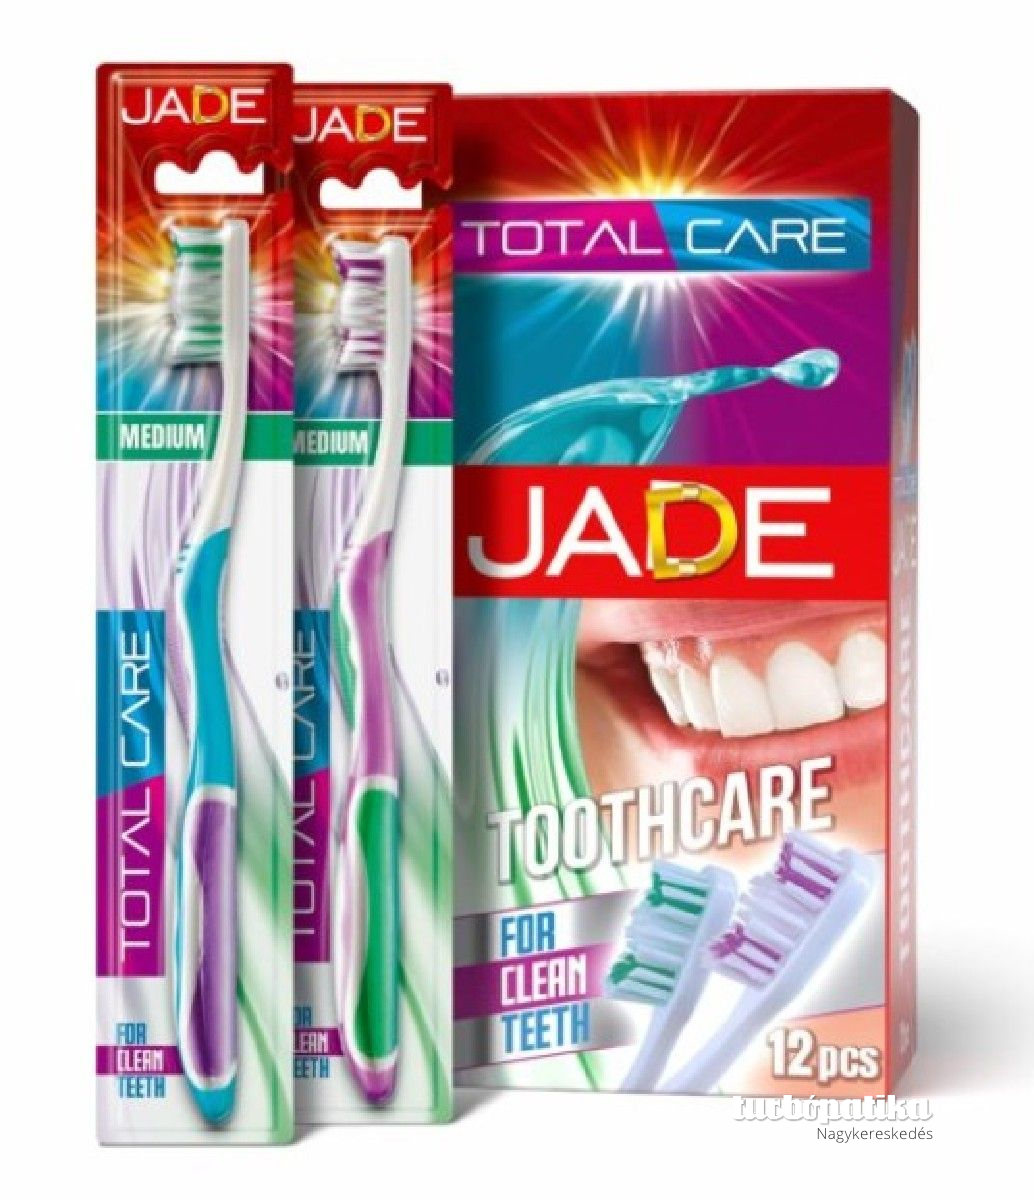 Jade fogkefe 1x Total Care Medium